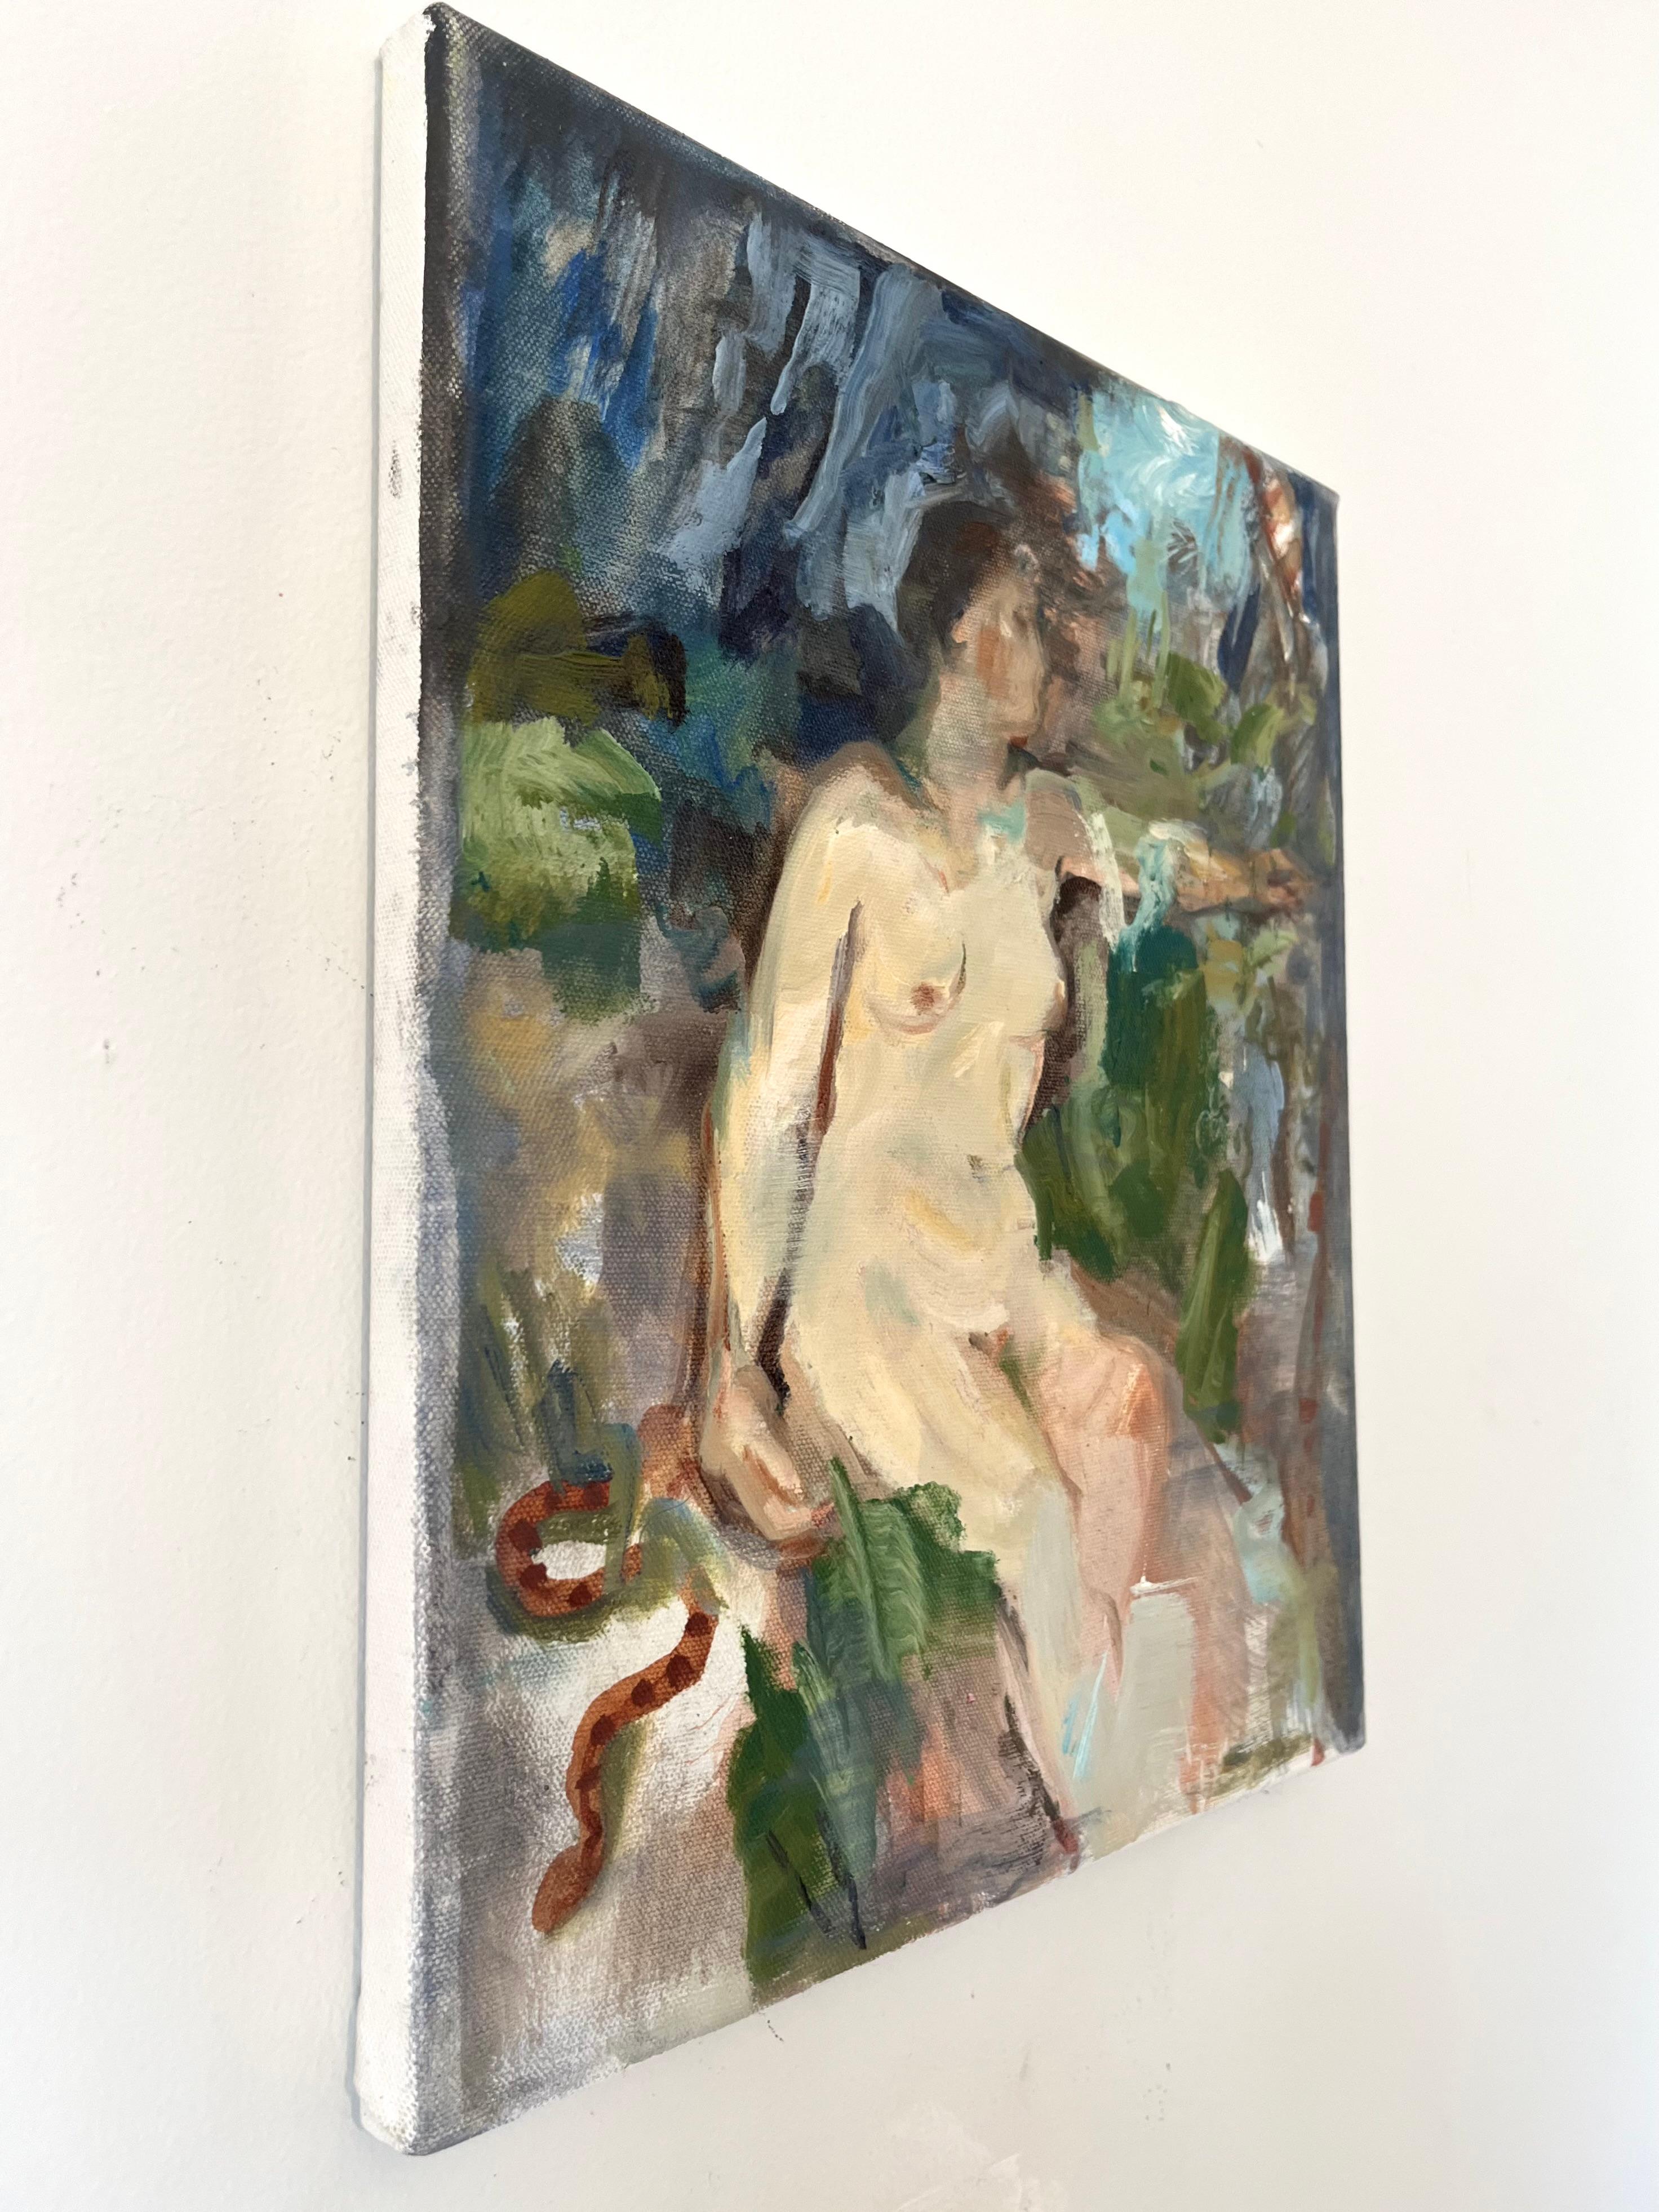 Moderner abstrakter weiblicher Akt, Öl auf Leinwand, gestisch, figurativ, mehrfarbig – Painting von Jessica Benjamin